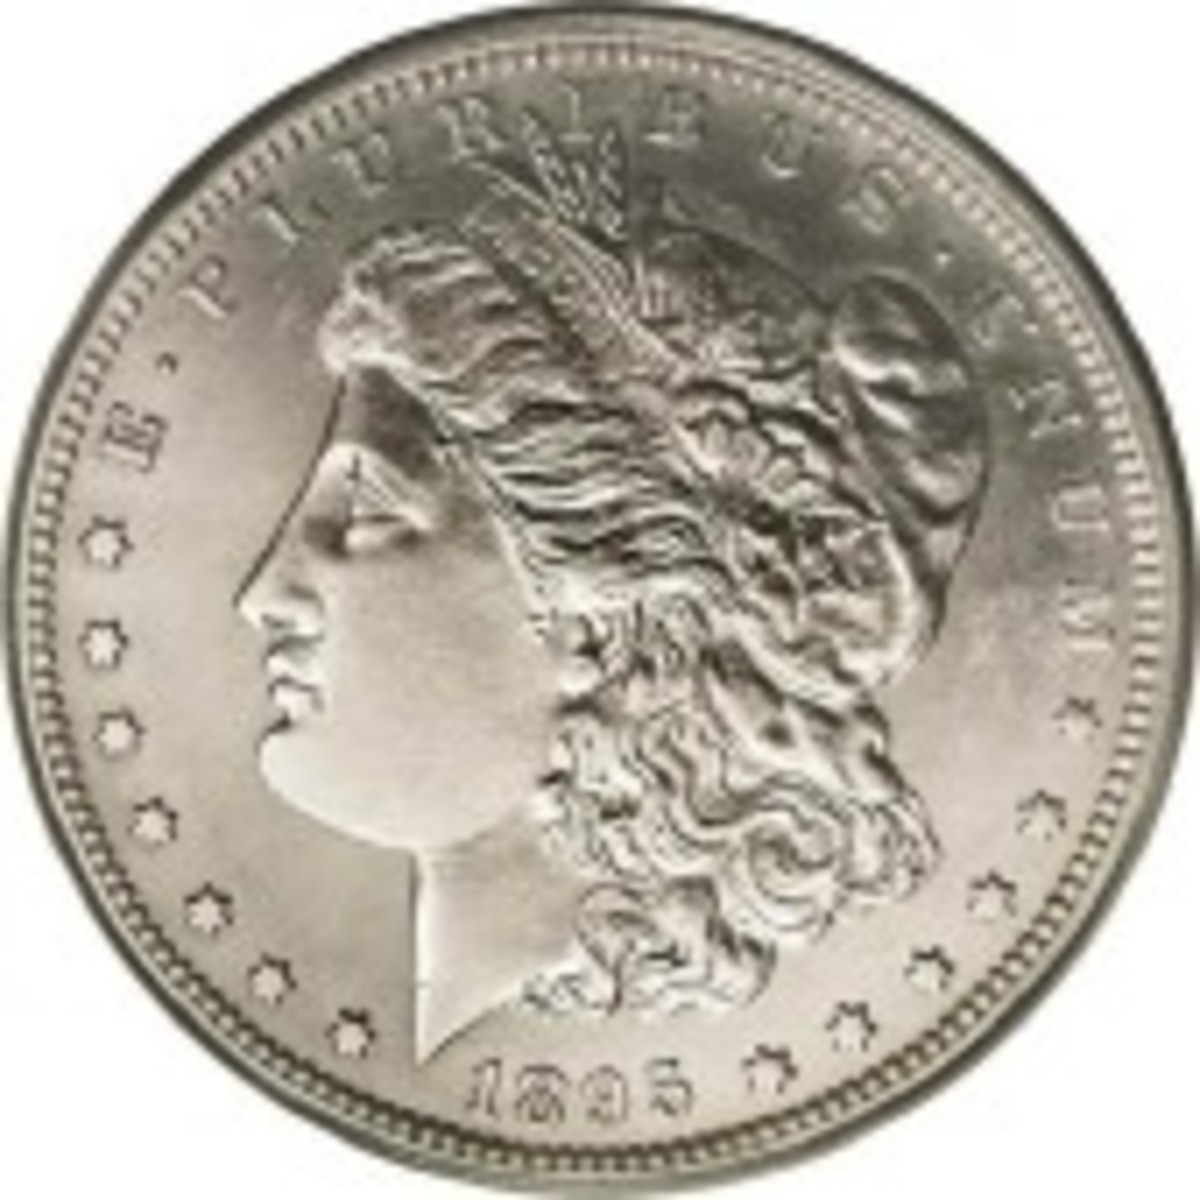 1890 $1,000 Treasury Note Commemorative Coin